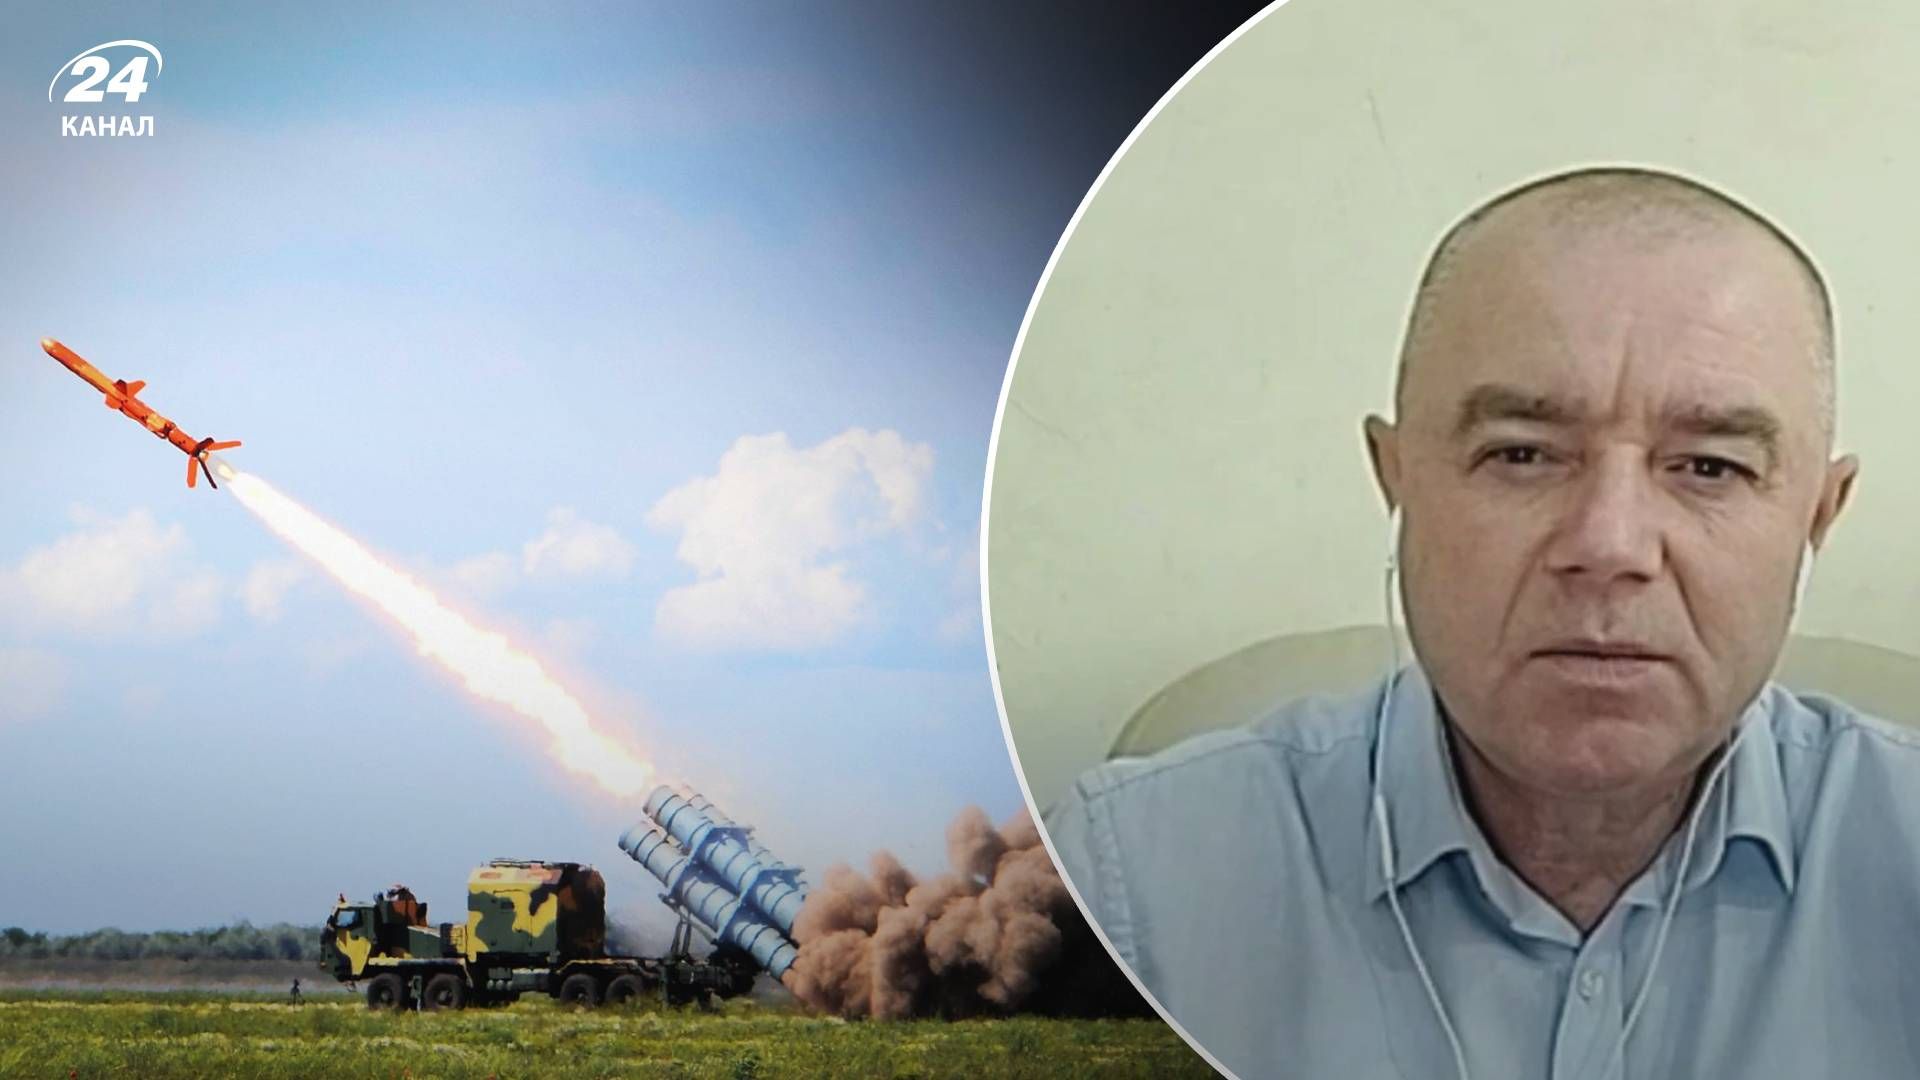 Ракеты Нептун - может ли Украина накапливать ракеты Нептун